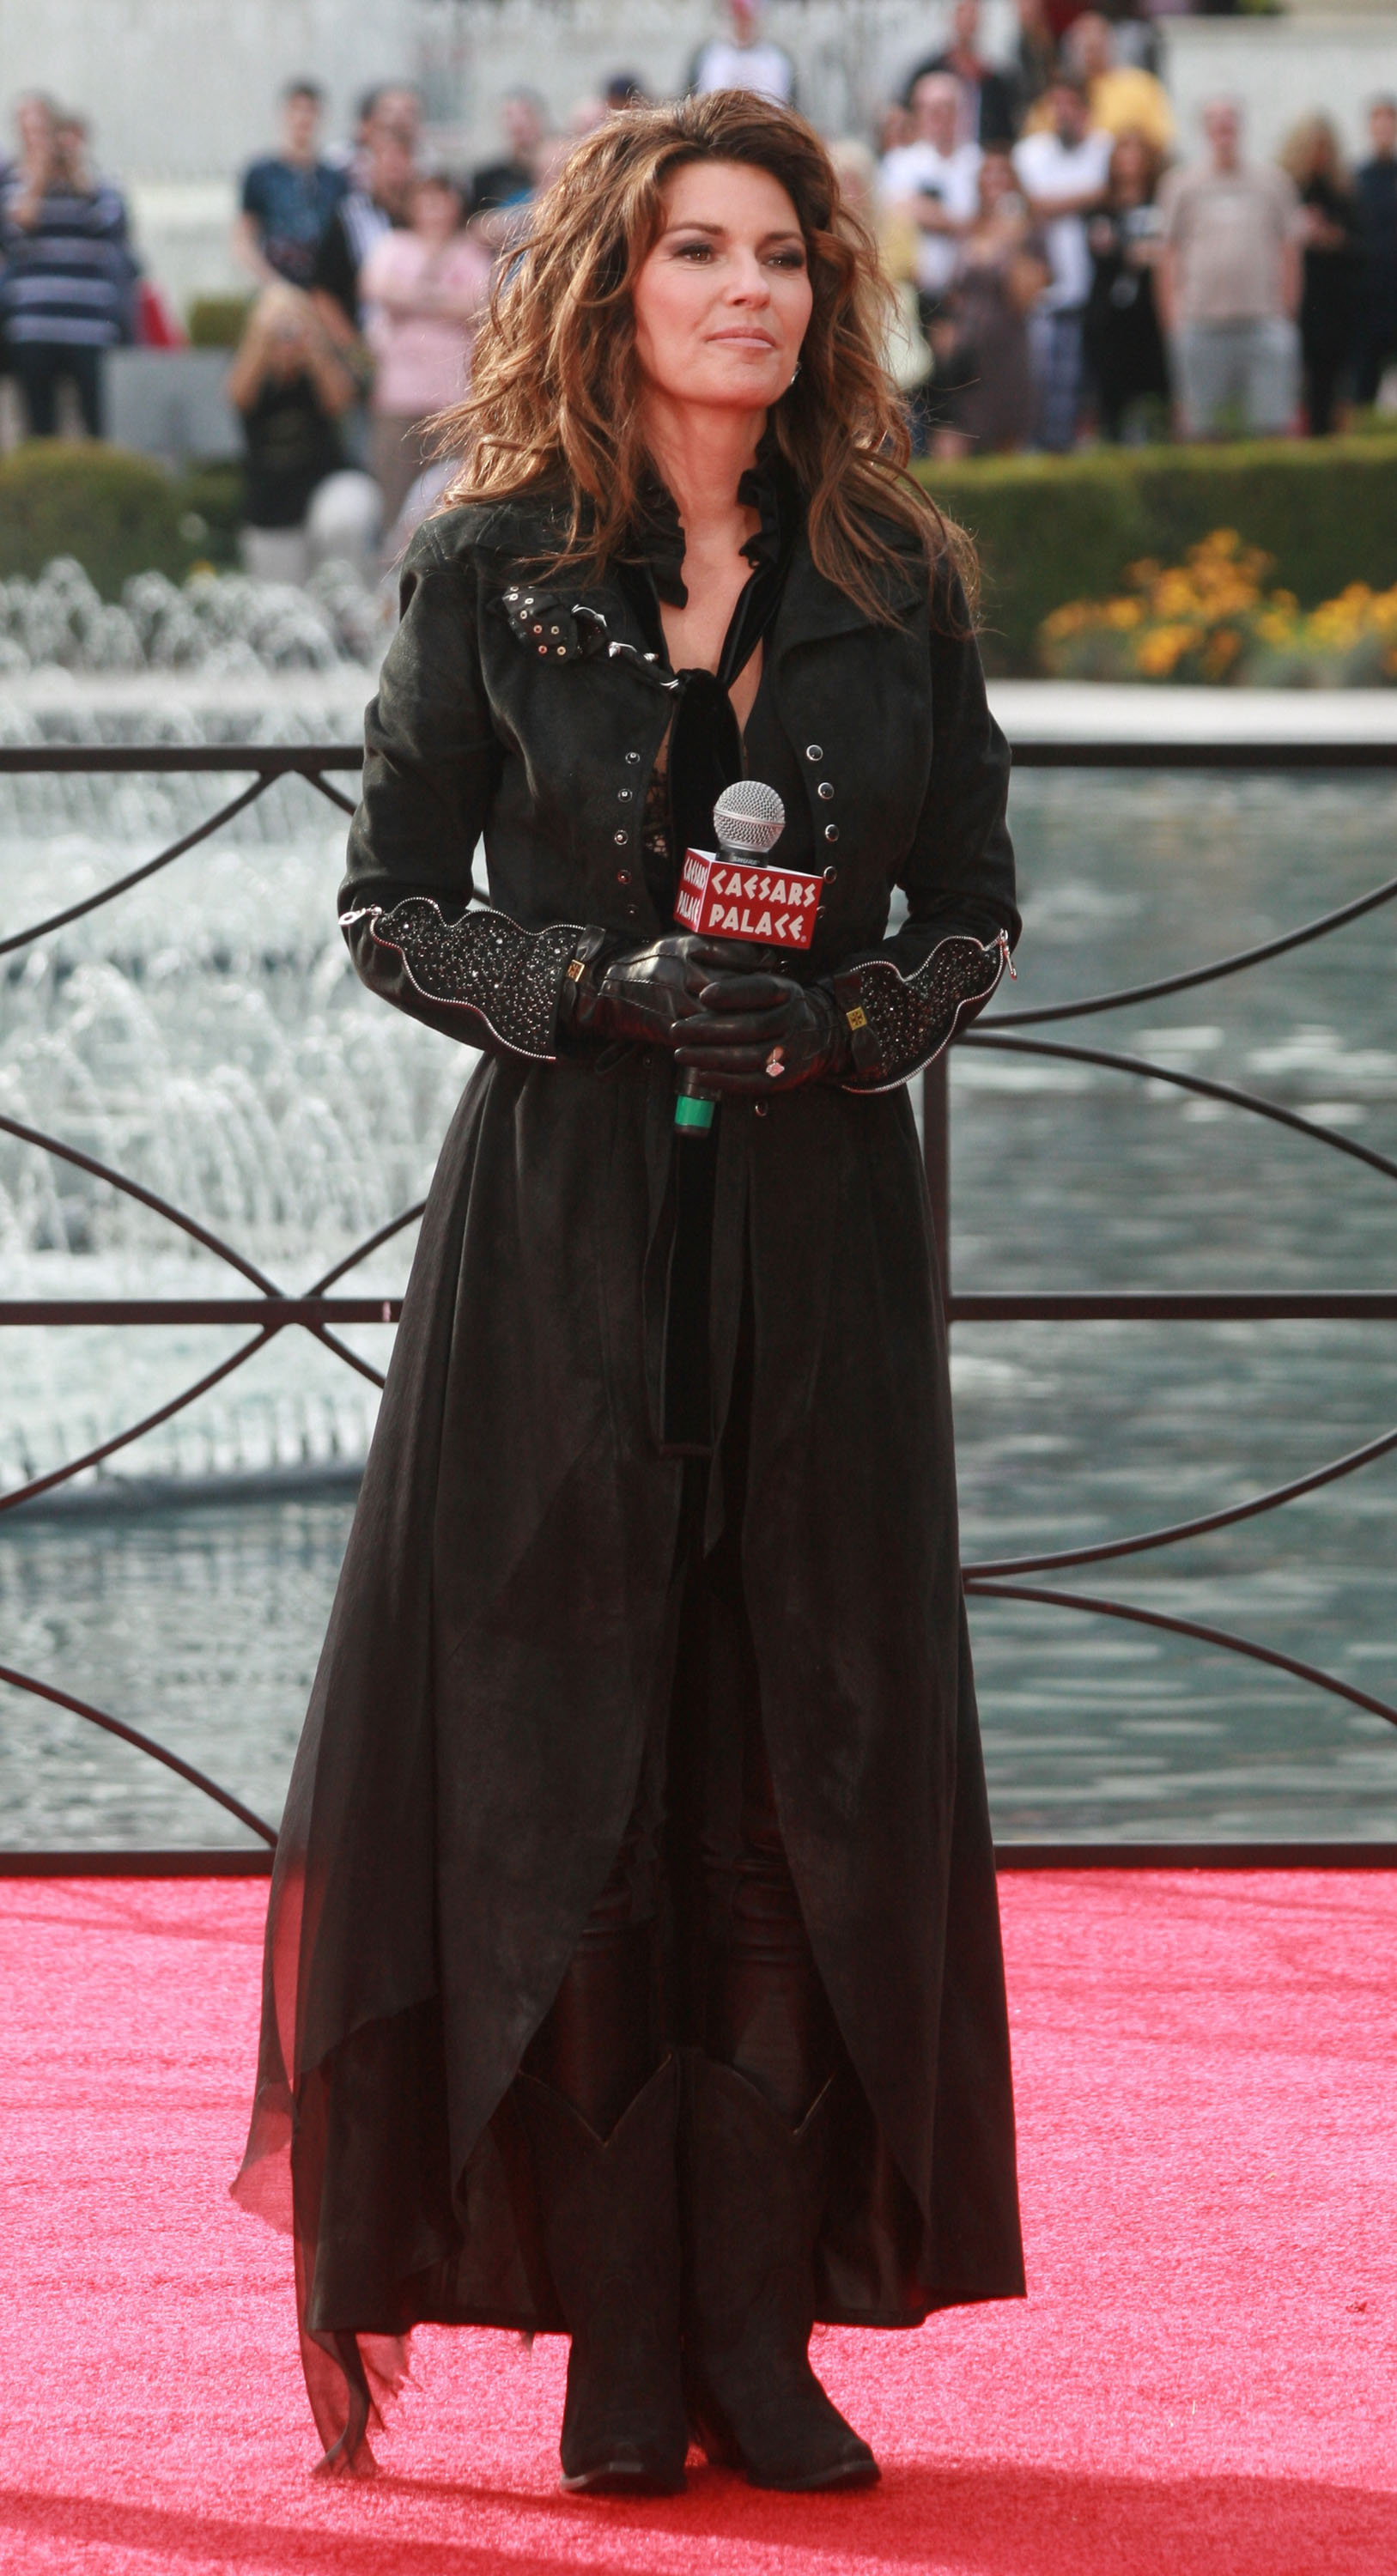 Shania Twain hace una gran entrada en el Caesars Palace el 14 de noviembre de 2012 en Las Vegas, Nevada | Fuente: Getty Images